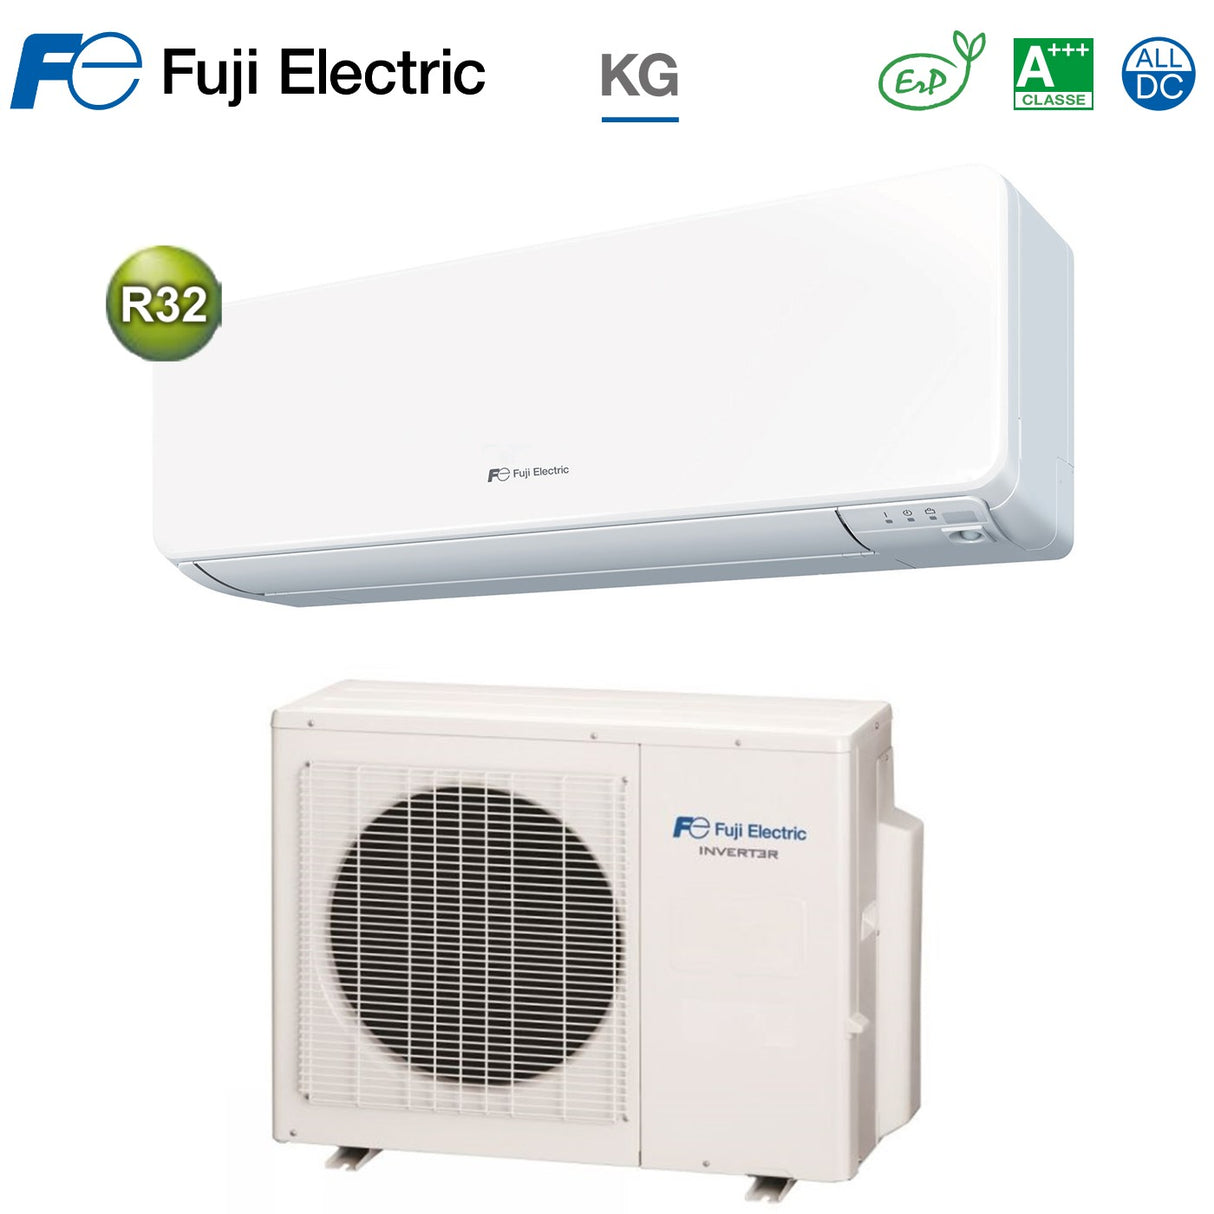 immagine-1-fuji-electric-climatizzatore-condizionatore-fuji-electric-inverter-serie-kg-9000-btu-rsg09kg-r-32-classe-a-ean-8059657005557